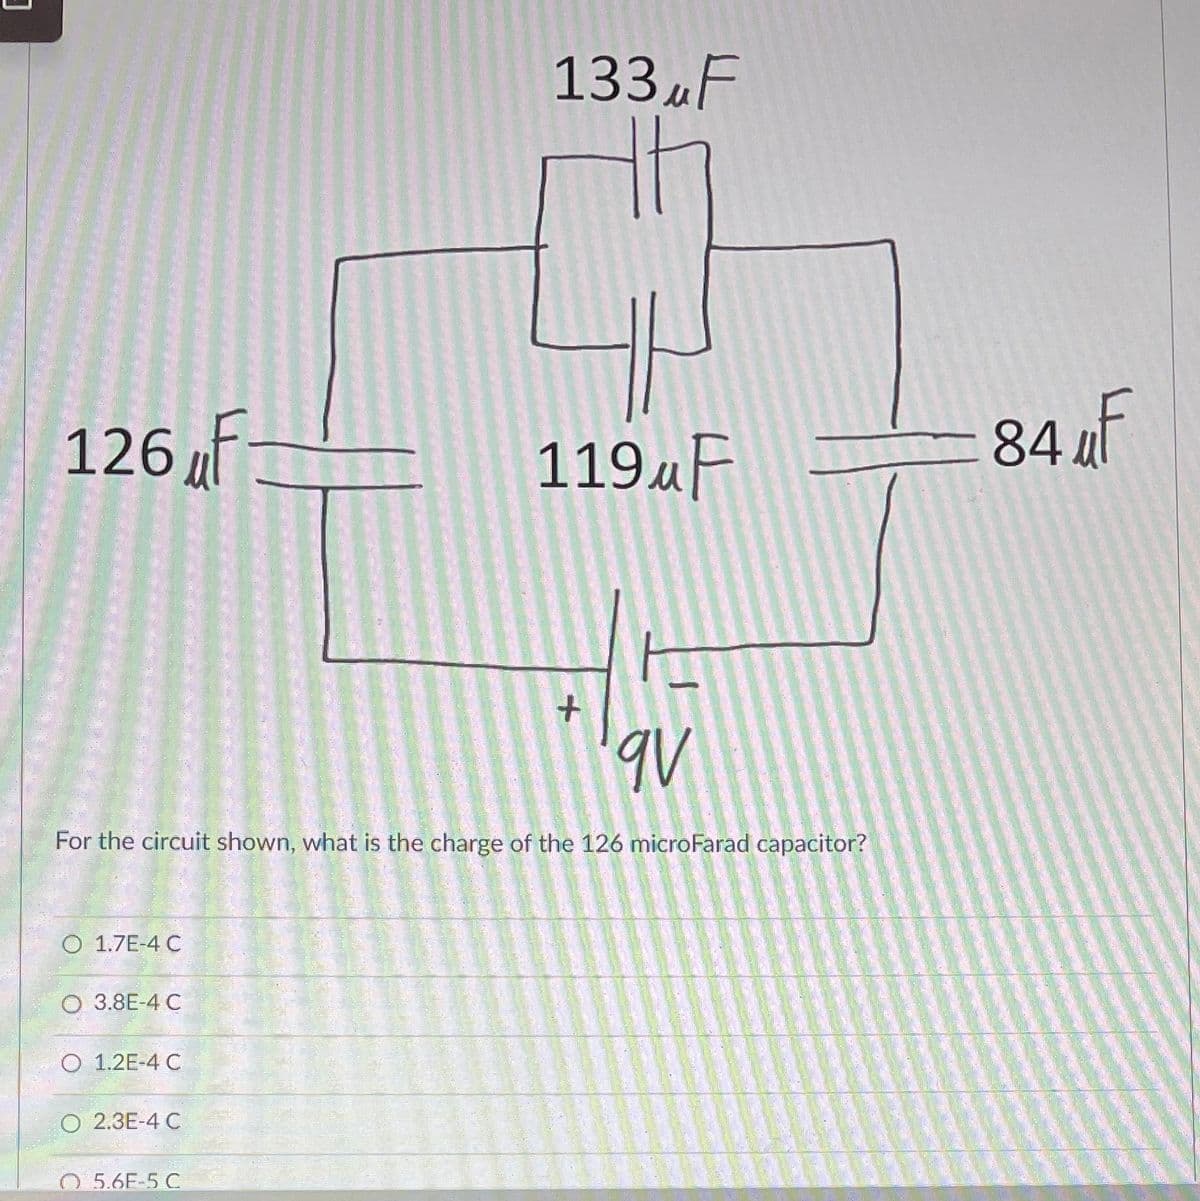 126 F
O 1.7E-4 C
3.8E-4 C
O 1.2E-4 C
For the circuit shown, what is the charge of the 126 microFarad capacitor?
O 2.3E-4 C
133 F
5.6E-5 C
119uF
+
qv
84 F